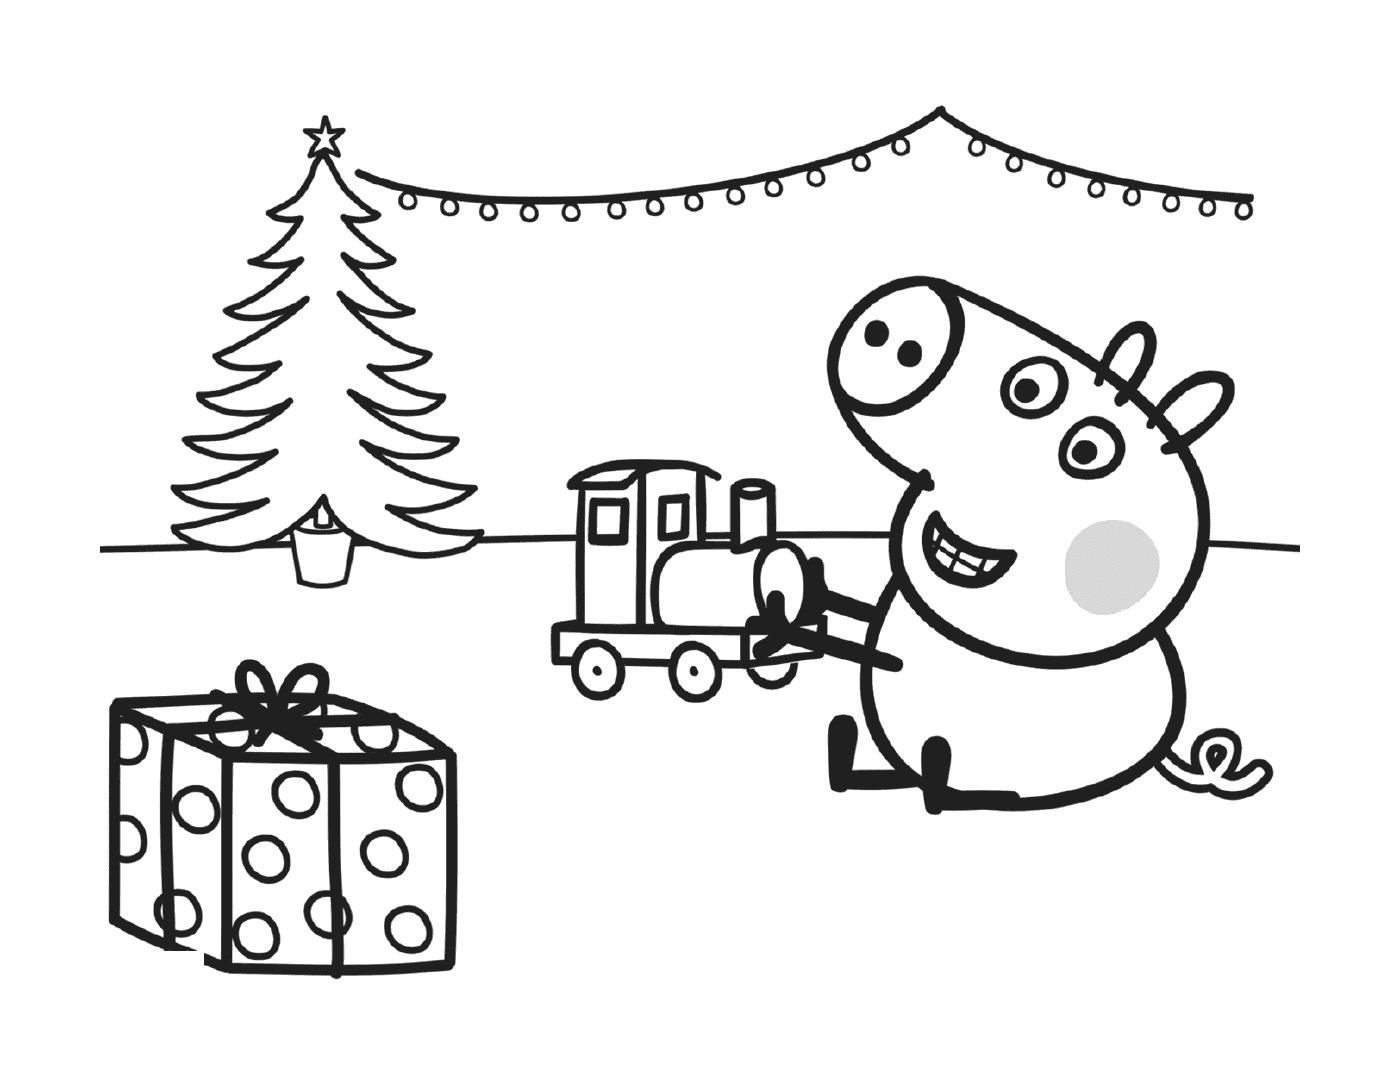  George gioca con il suo regalo di Natale, un treno 